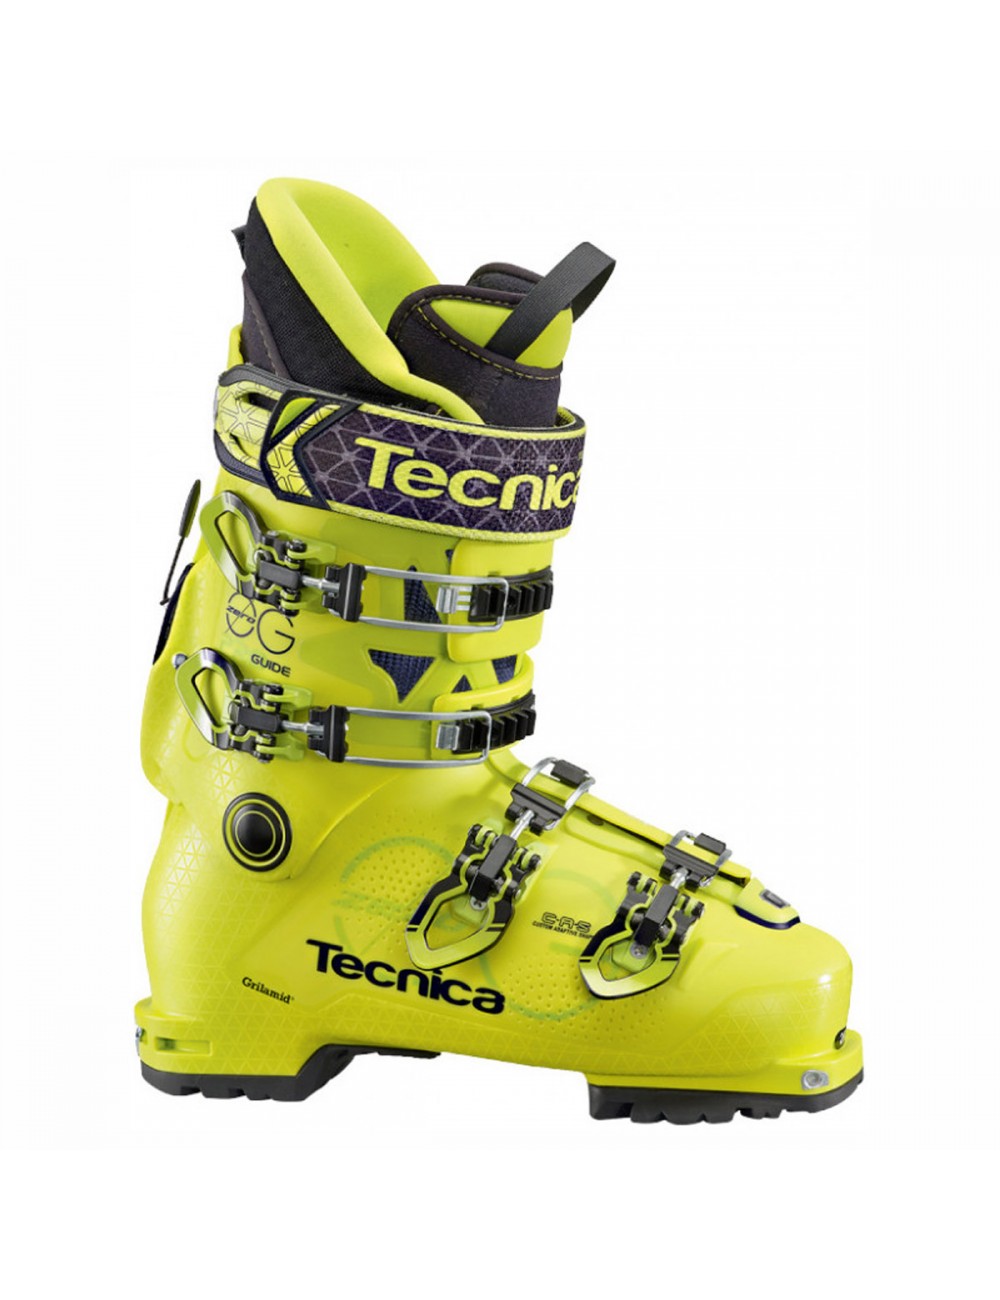 山スキー用ブーツ テクニカ ZERO G 26.5cm - スキー